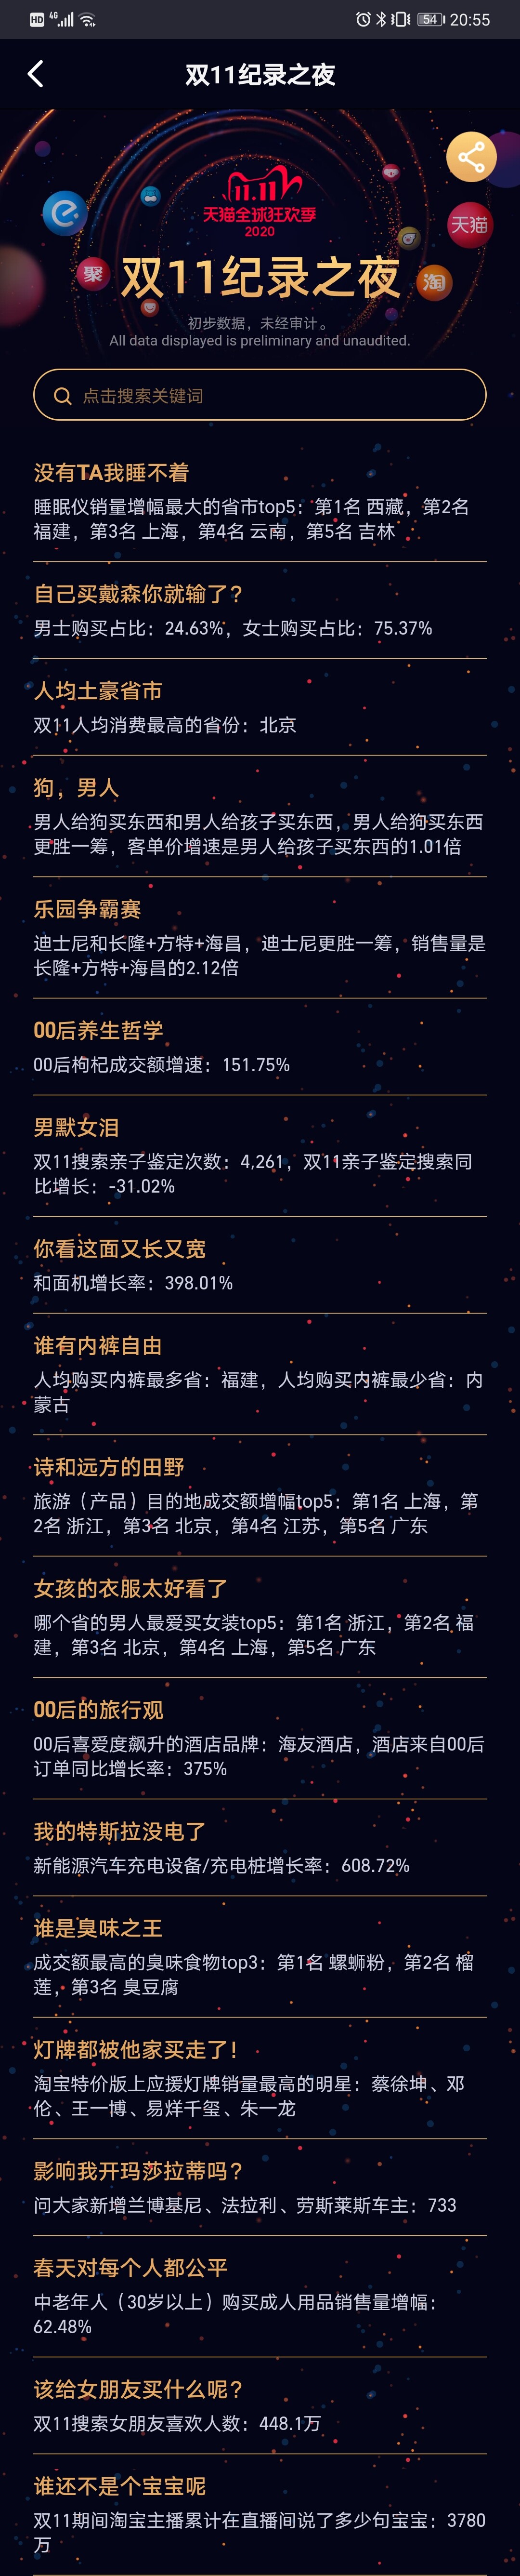 双11记录之夜：北京人均消费最高 螺蛳粉成为臭味之王_零售_电商之家